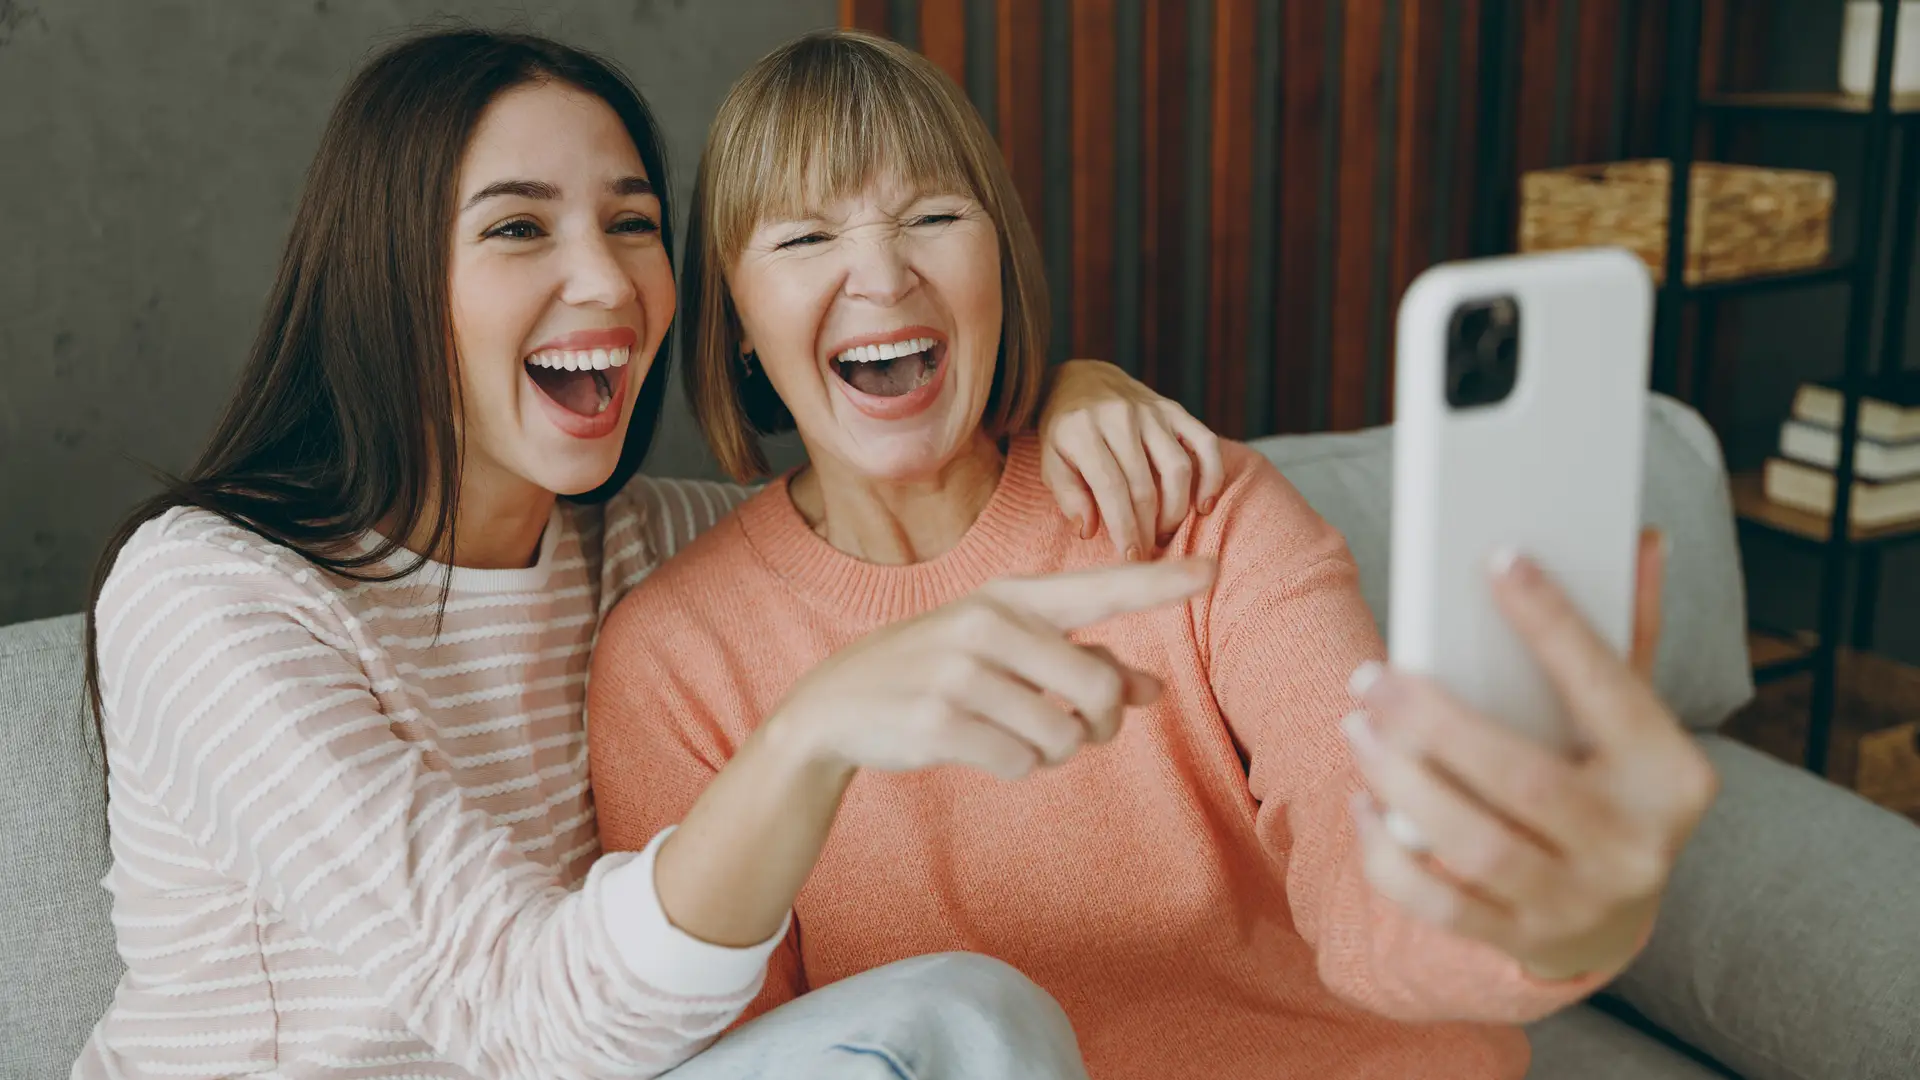 Madre e hija disfrutando gracias a los celulares 4G